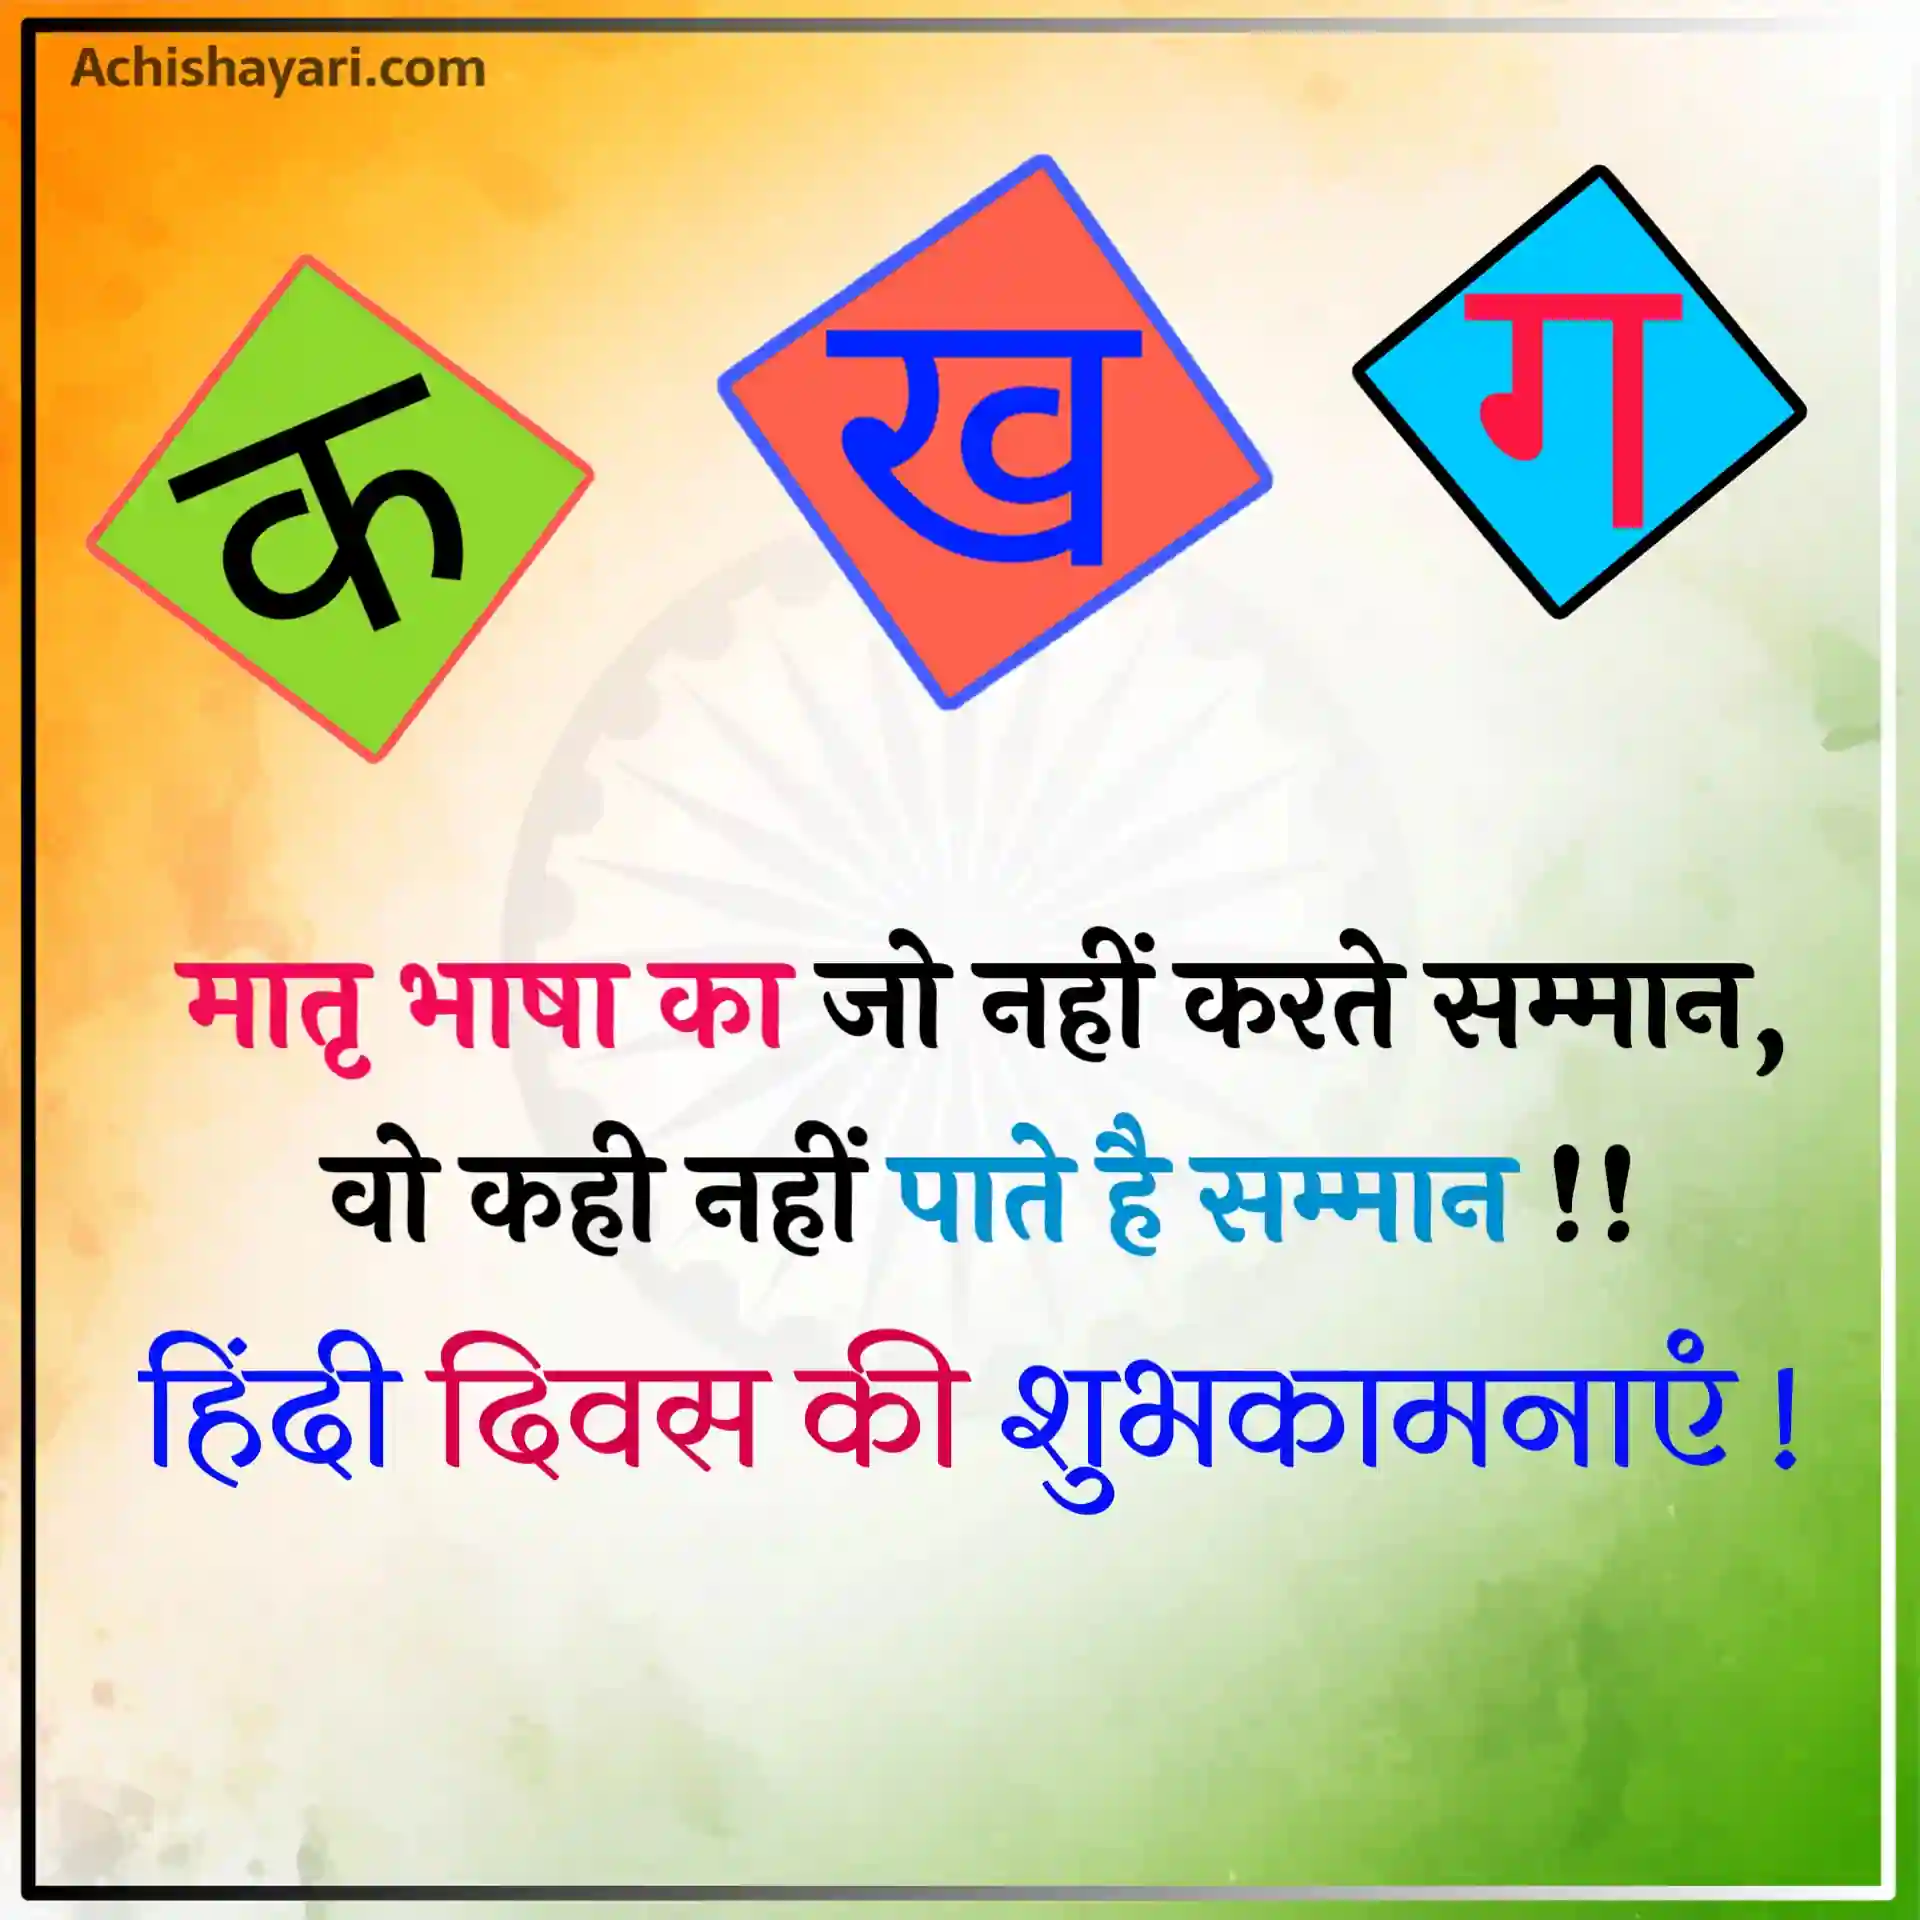 Hindi Diwas Quotes Image